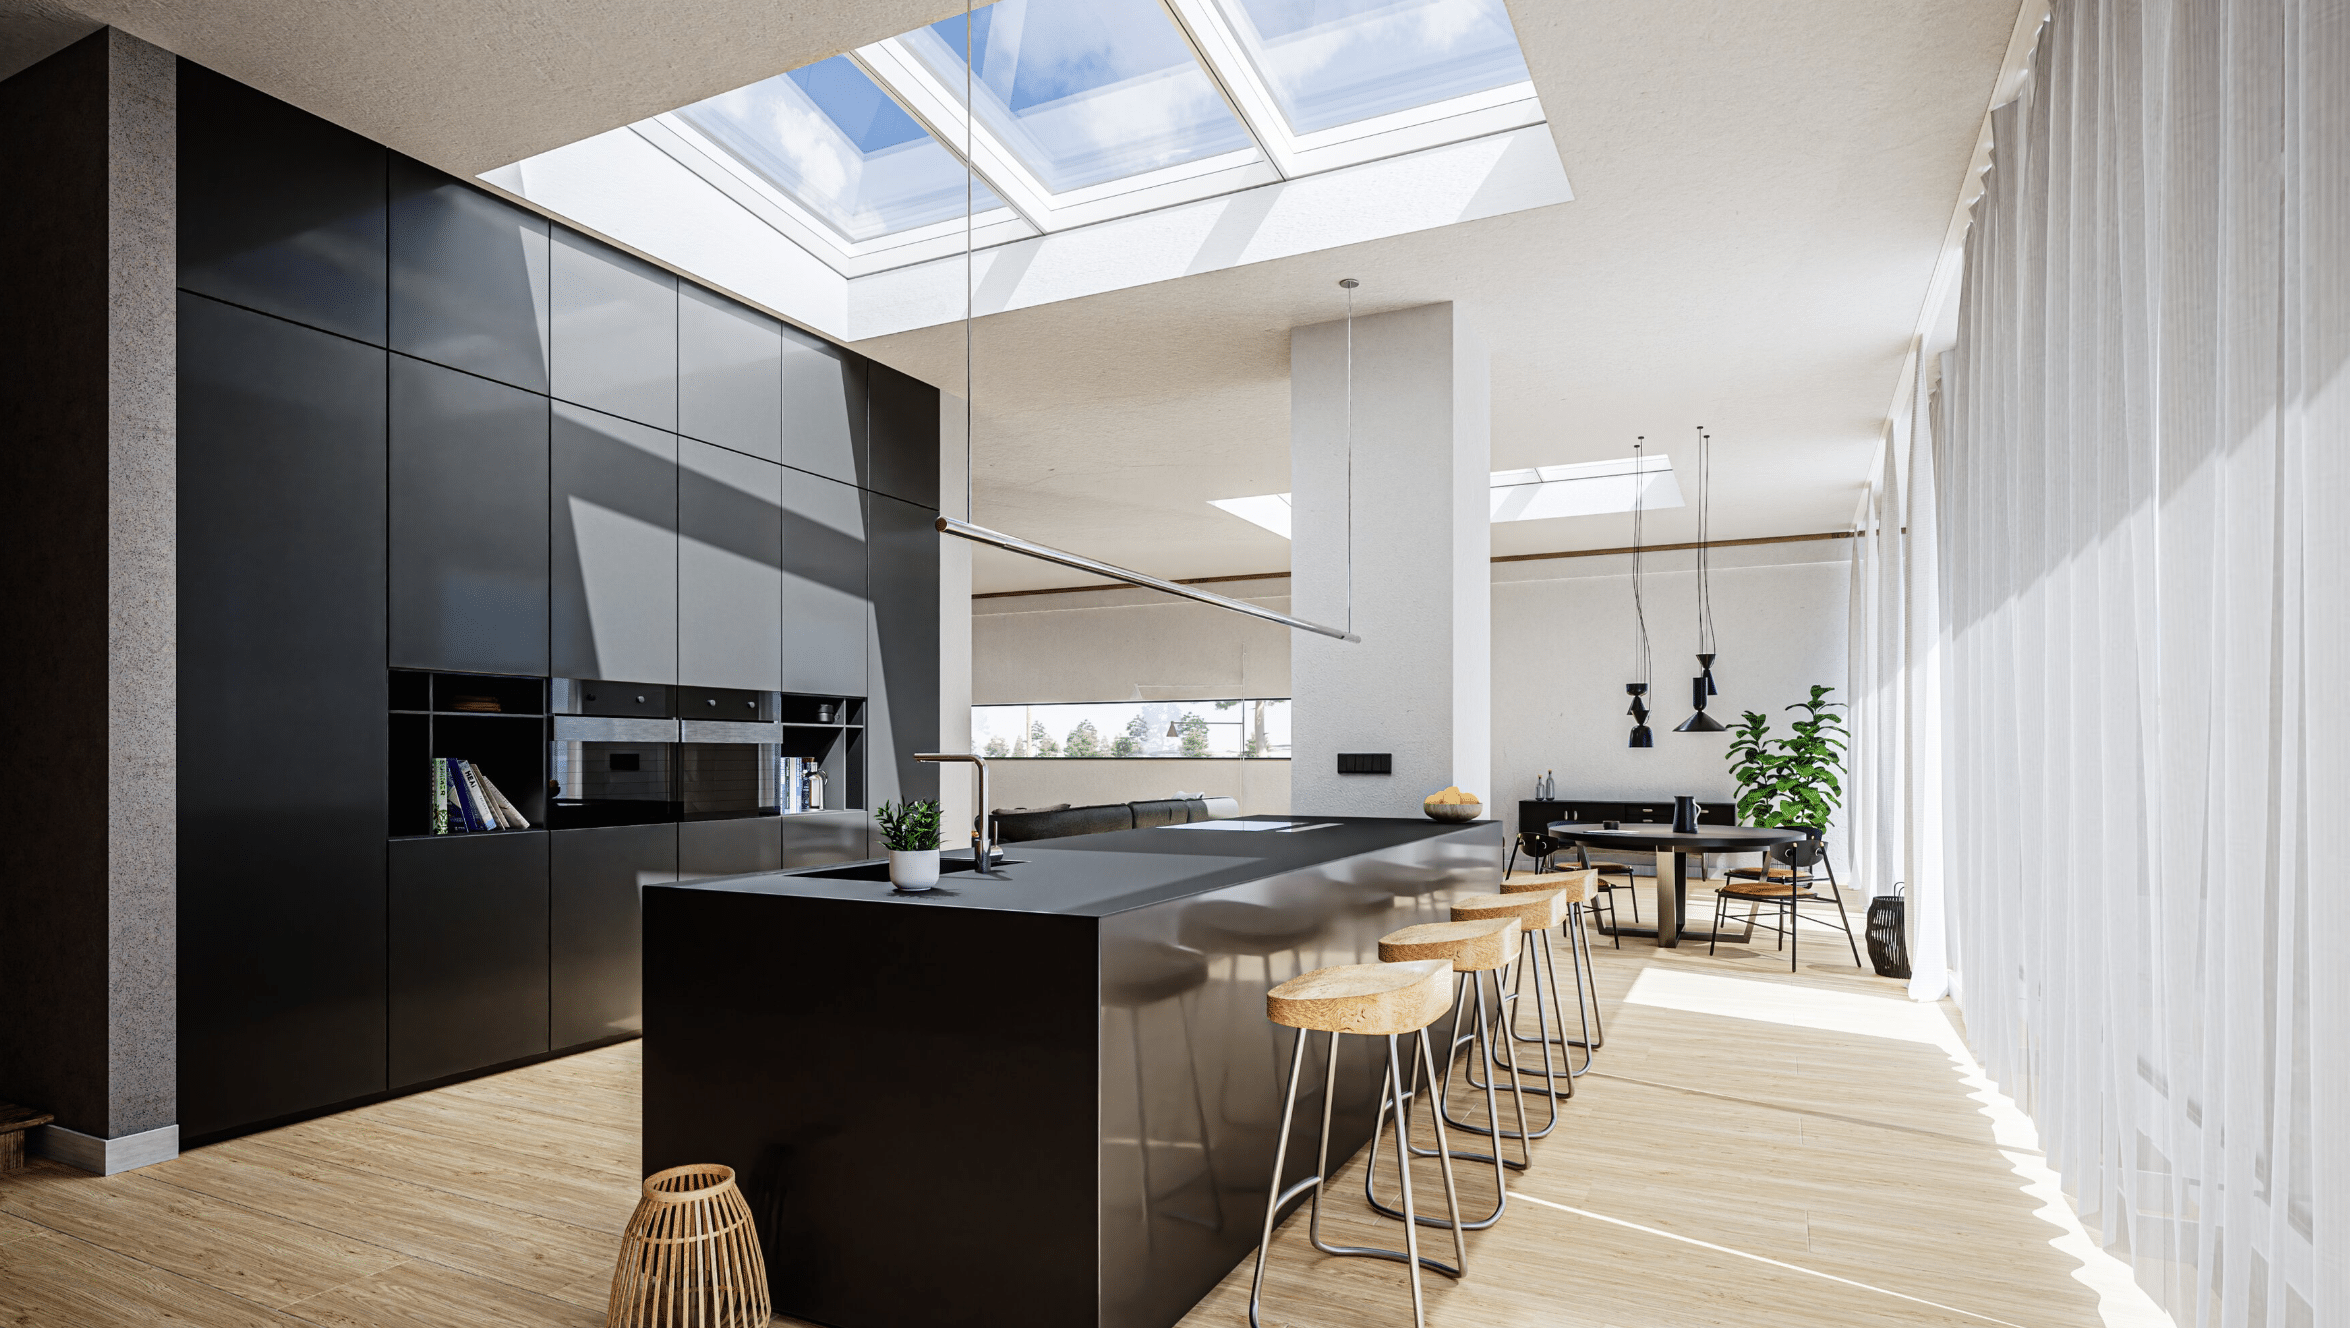 Lamilux zeigt eine elegante Küche mit einer Kochinsel, schwarzen Oberflächen in Hochglanz und einem Panoramadach für viel Tageslicht beim Kochen.